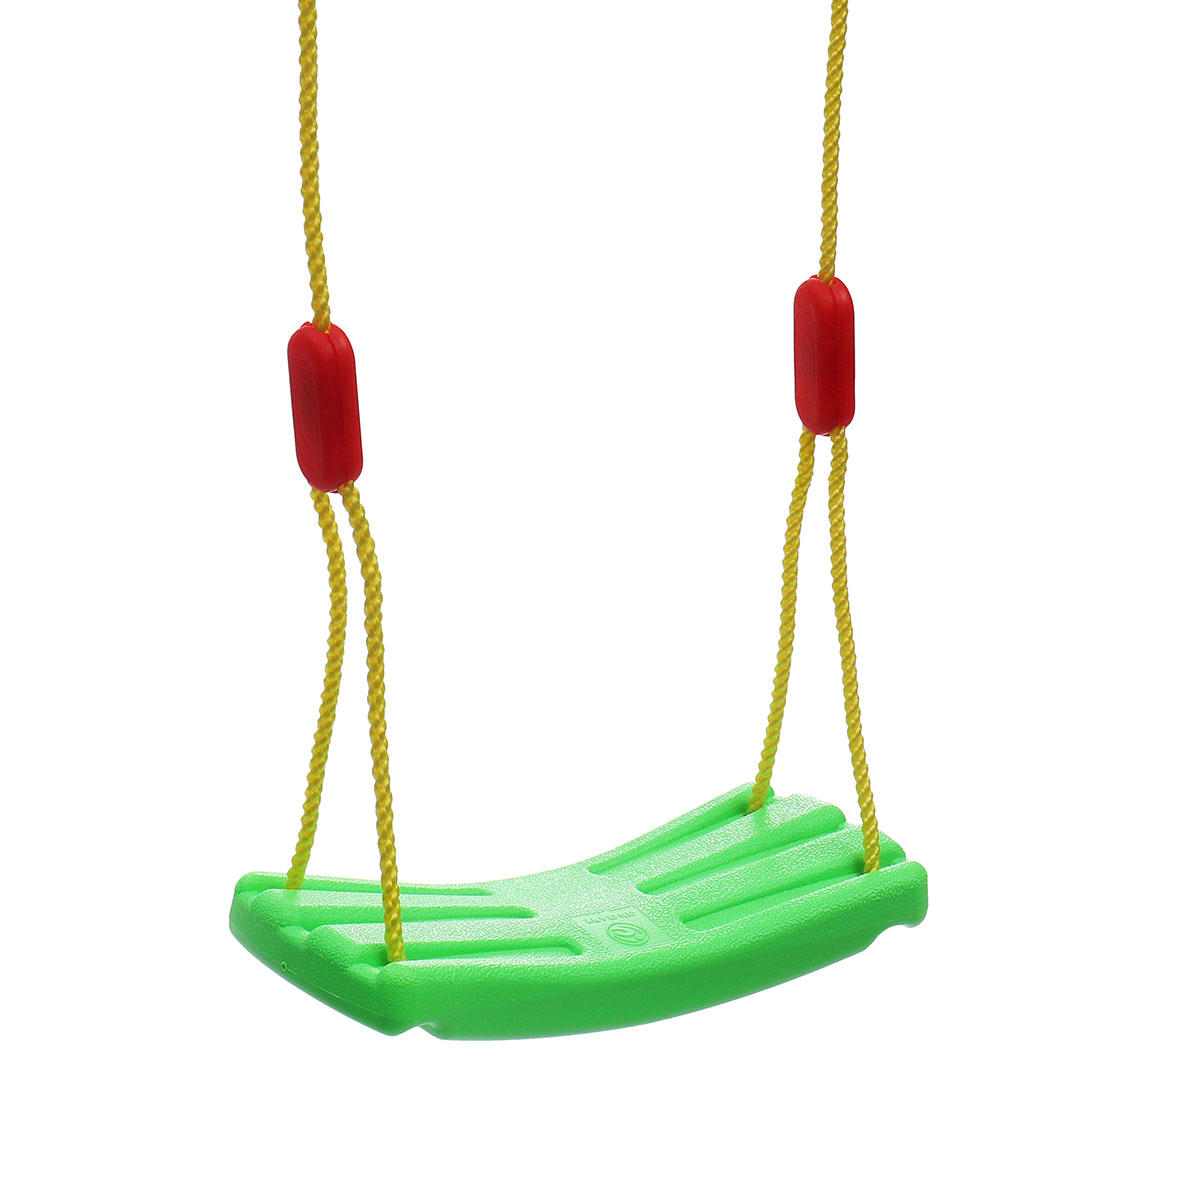 Kids Swing Seat Children Fun Toy Outdoor Garden Hammock Adjustable Rope Hanging Chair